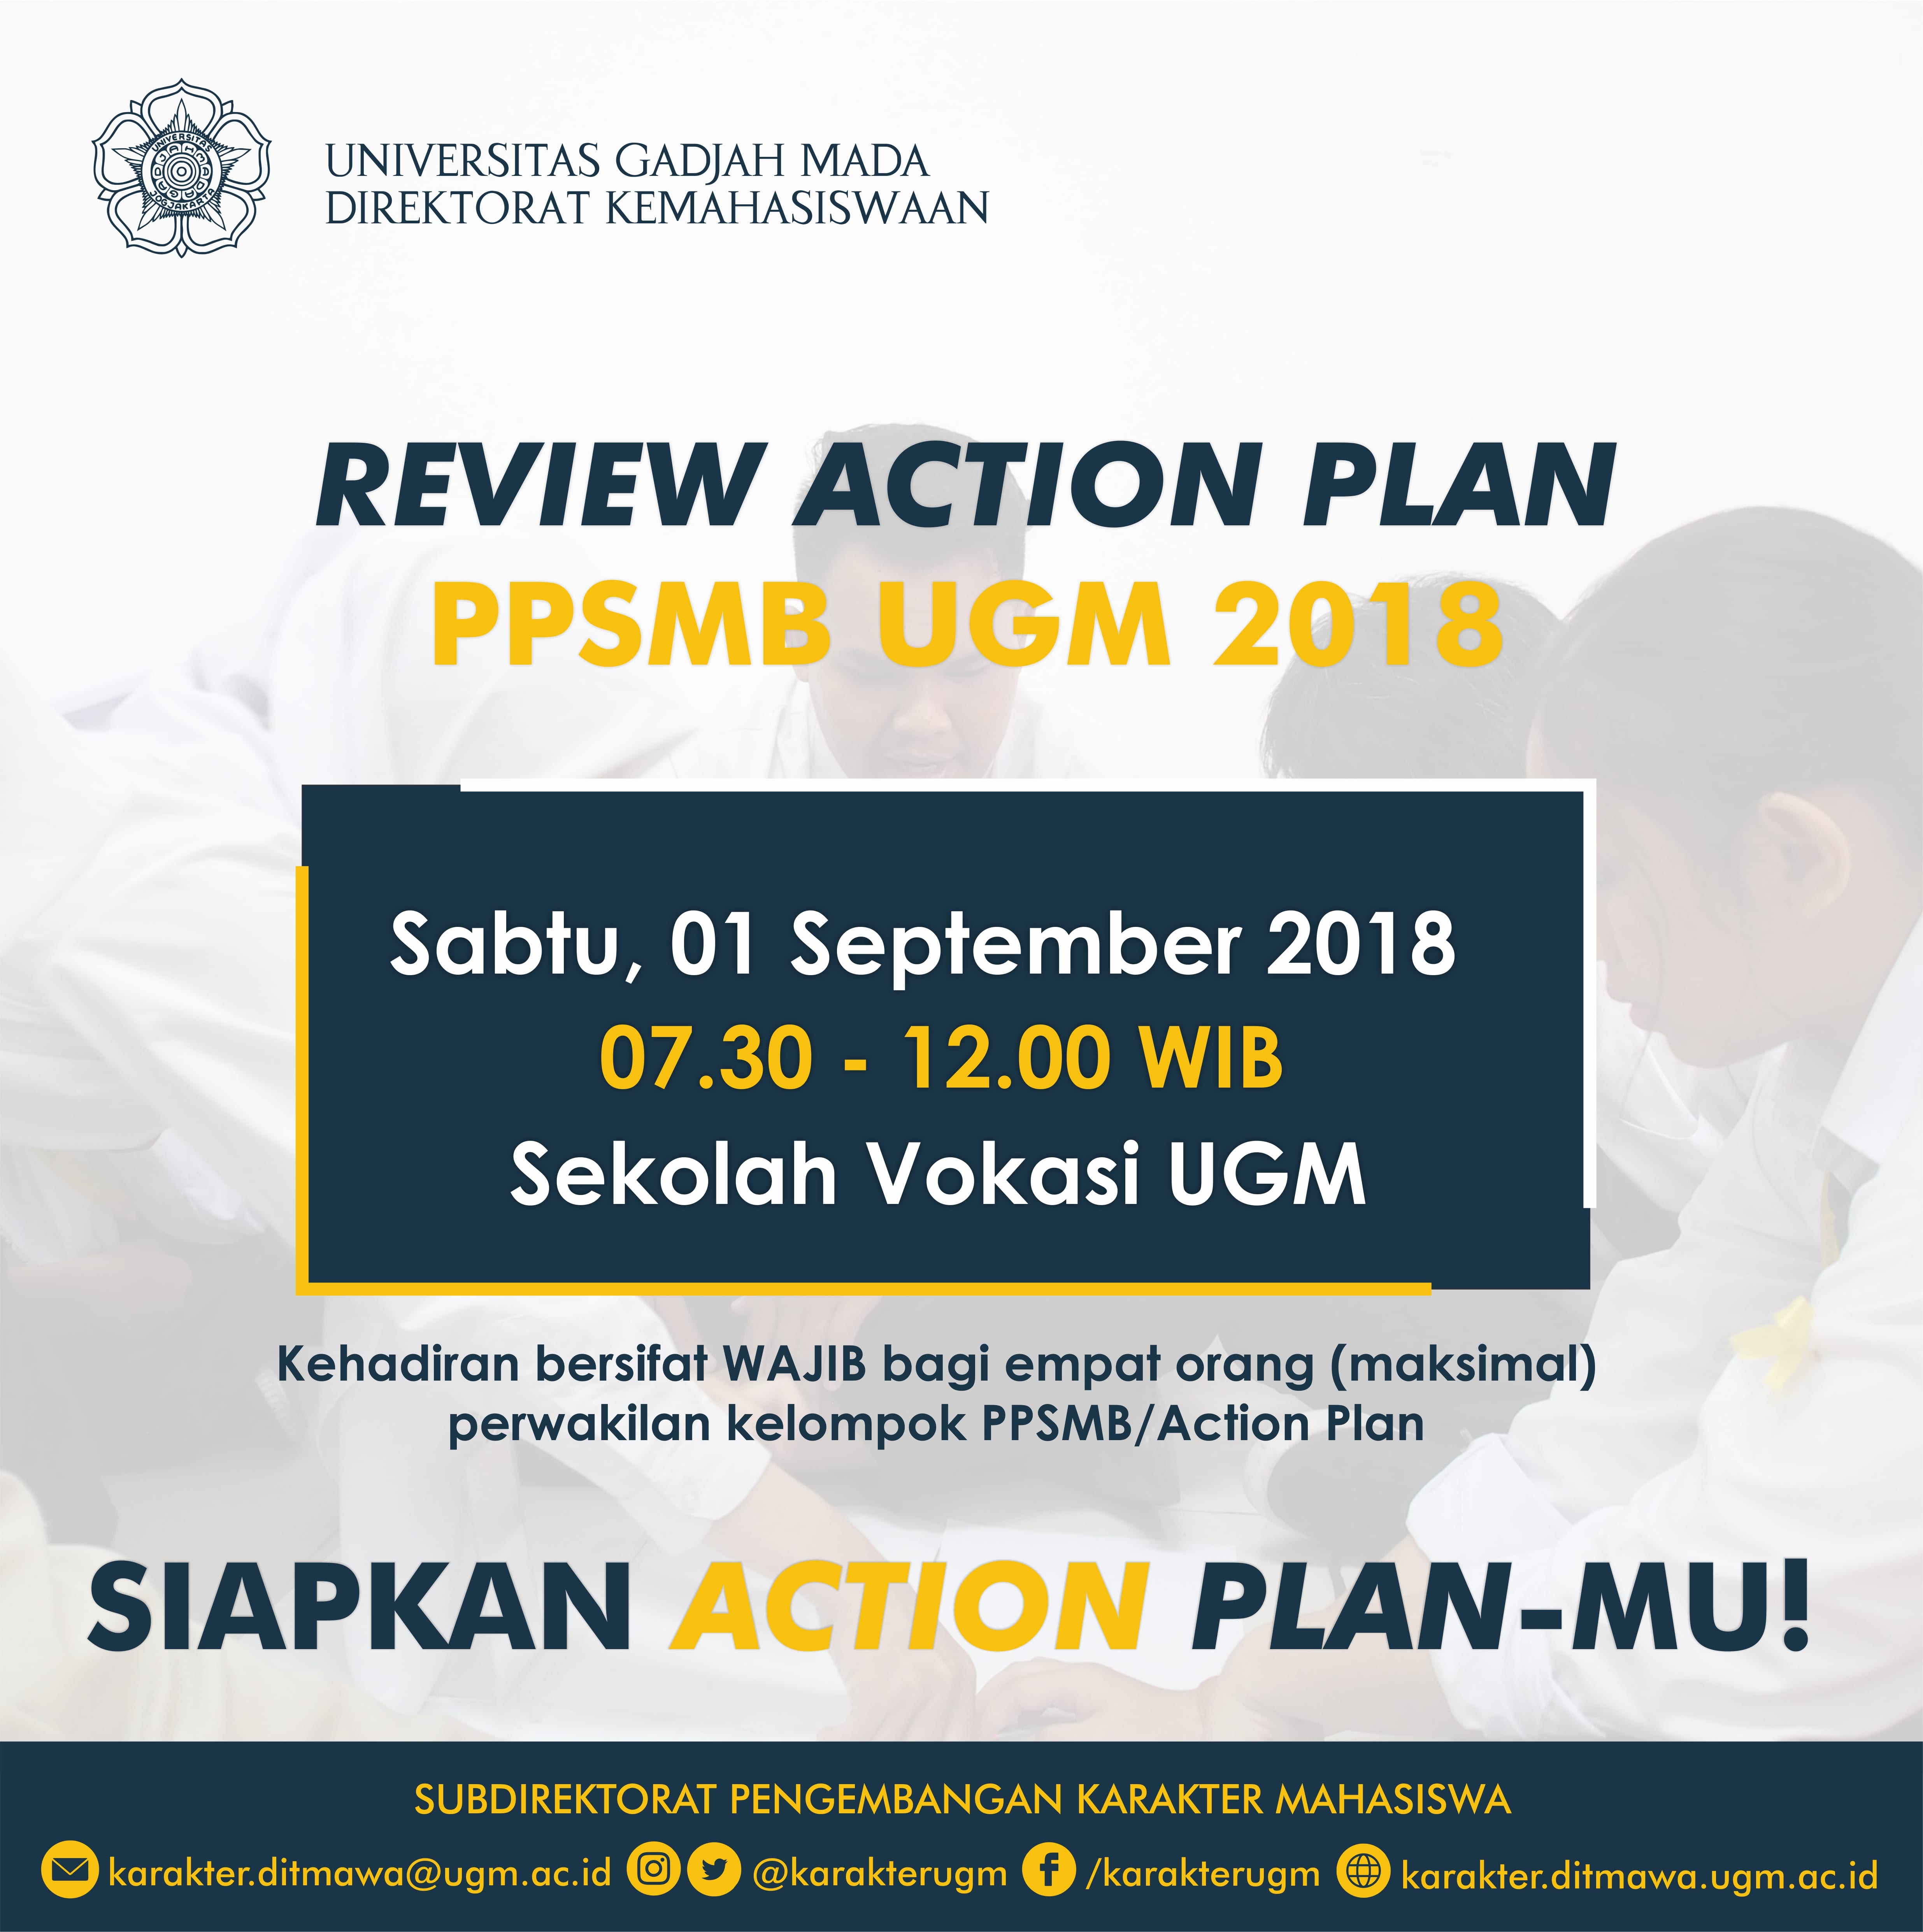 [PENGUMUMAN] Review Action Plan PPSMB UGM 2018